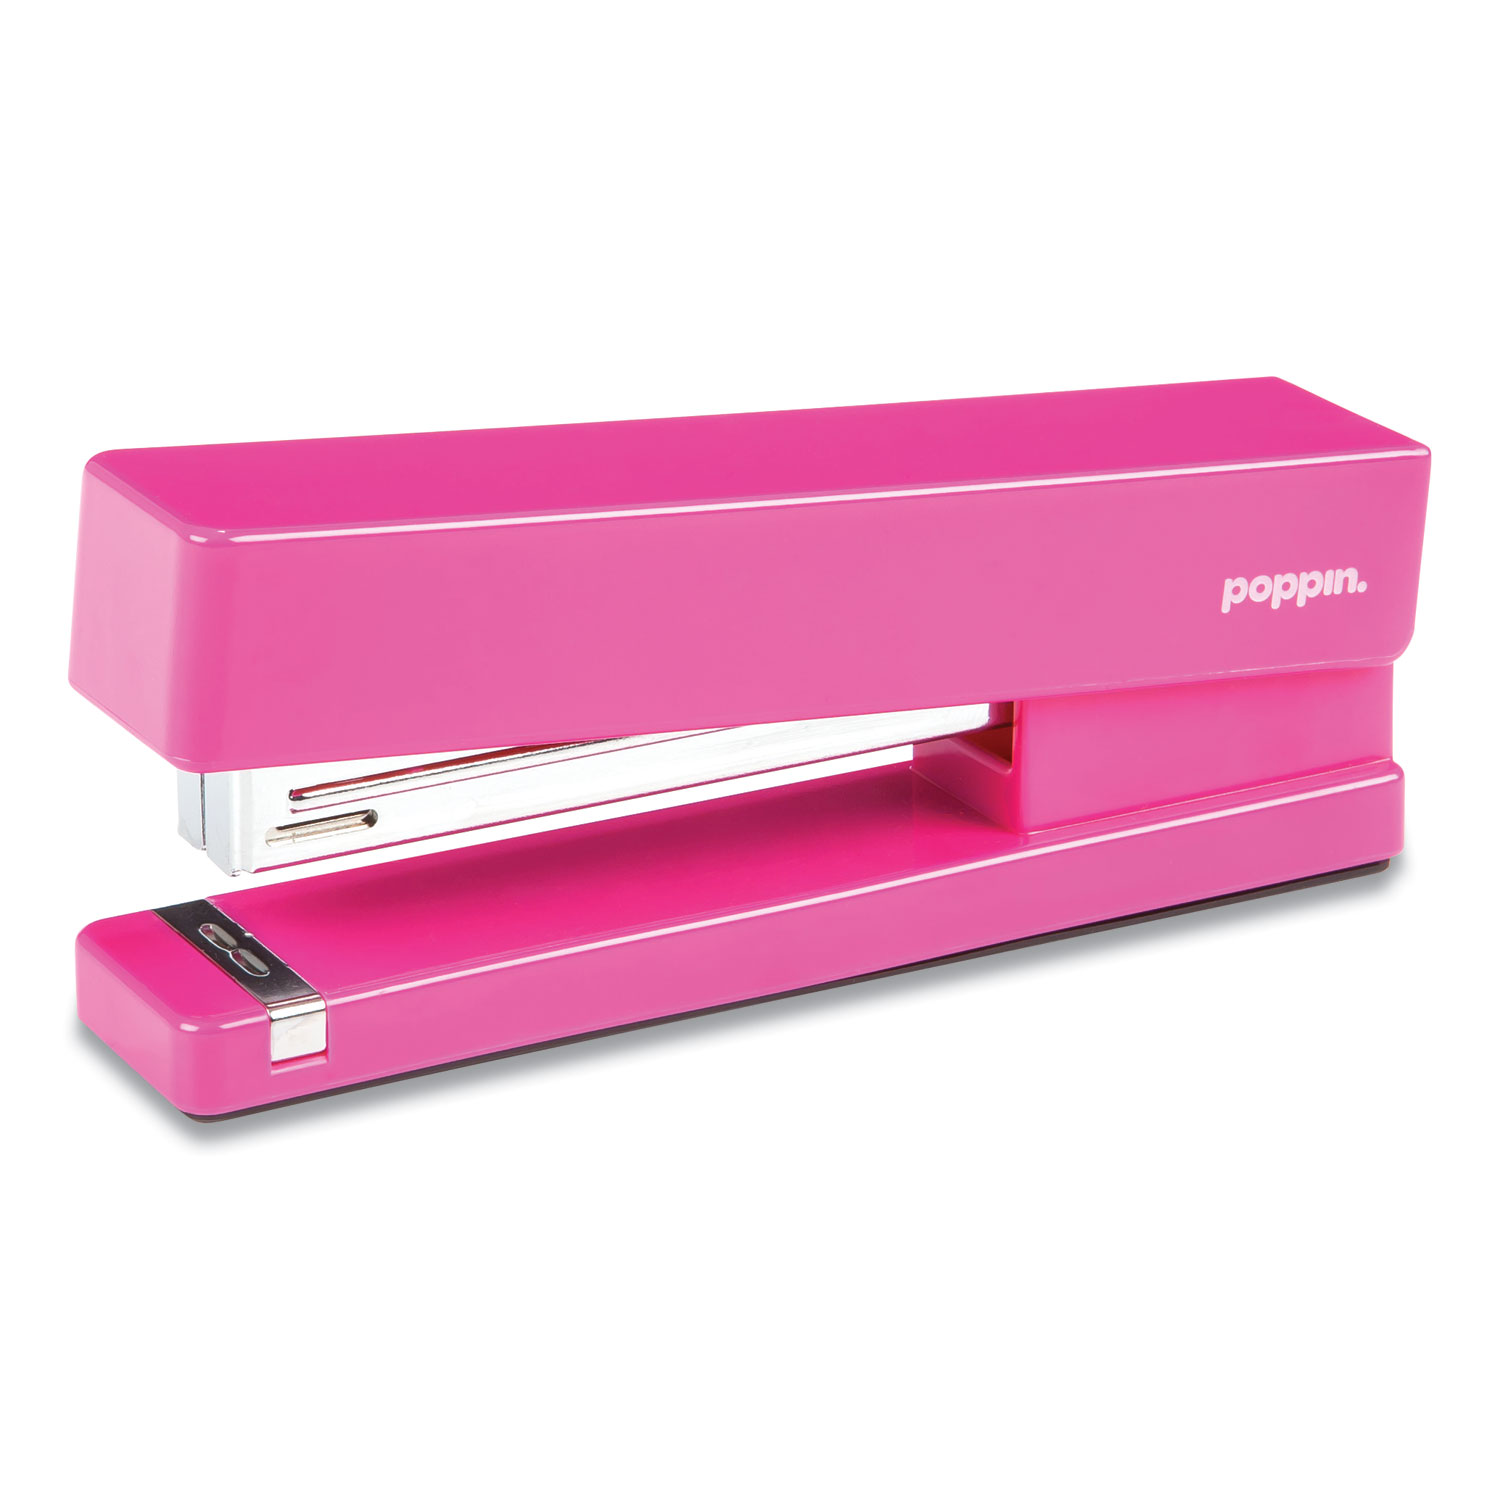 Poppin Desktop Stapler, 20-Sheet Capacity, Pink